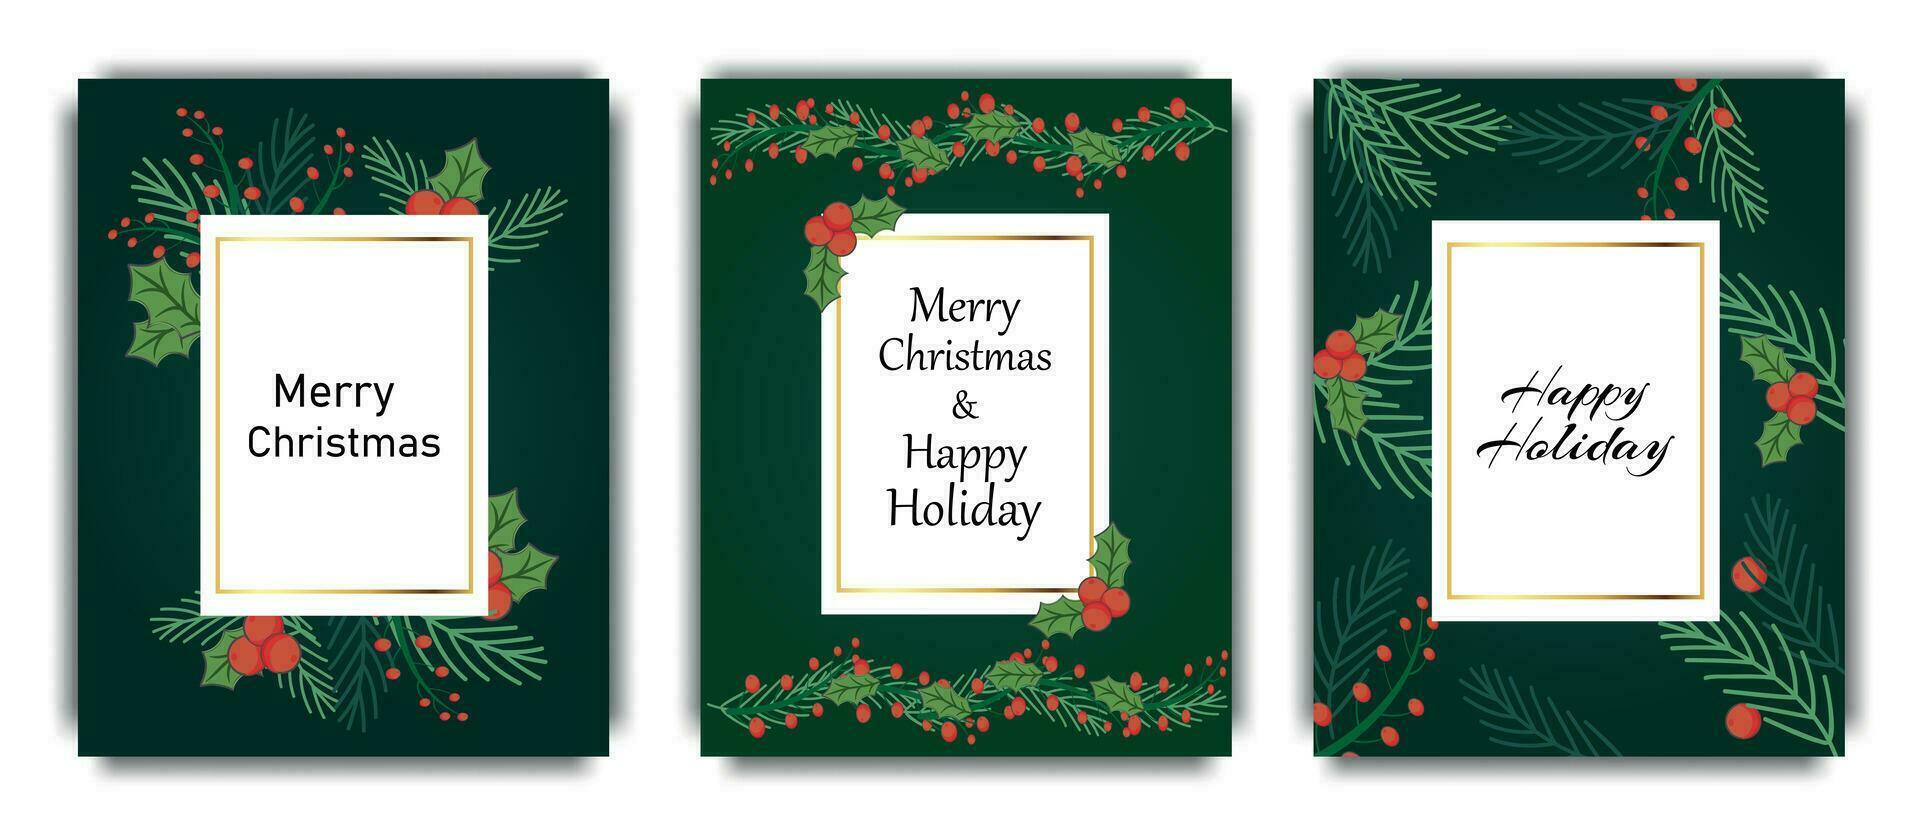 jul affischer. designer layouter för jul. posters med gran grenar och järnek bär med Grattis inskriptioner, på en mörk grön bakgrund. vektor illustration.